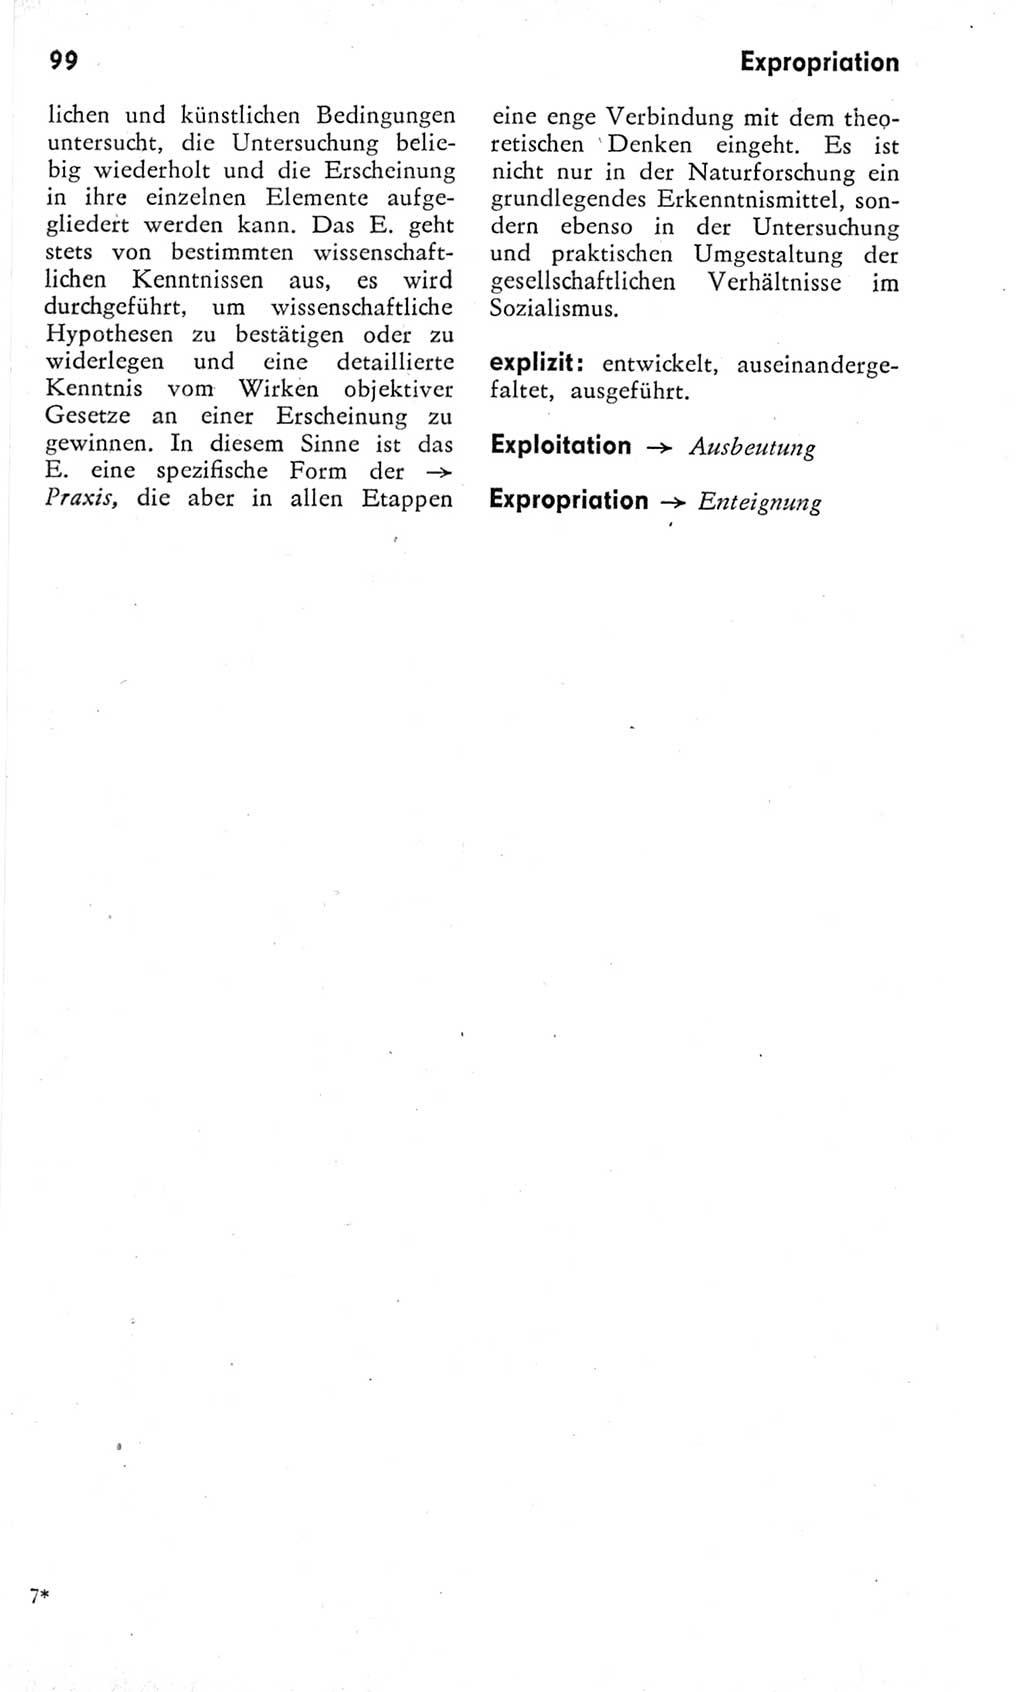 Kleines Wörterbuch der marxistisch-leninistischen Philosophie [Deutsche Demokratische Republik (DDR)] 1975, Seite 99 (Kl. Wb. ML Phil. DDR 1975, S. 99)